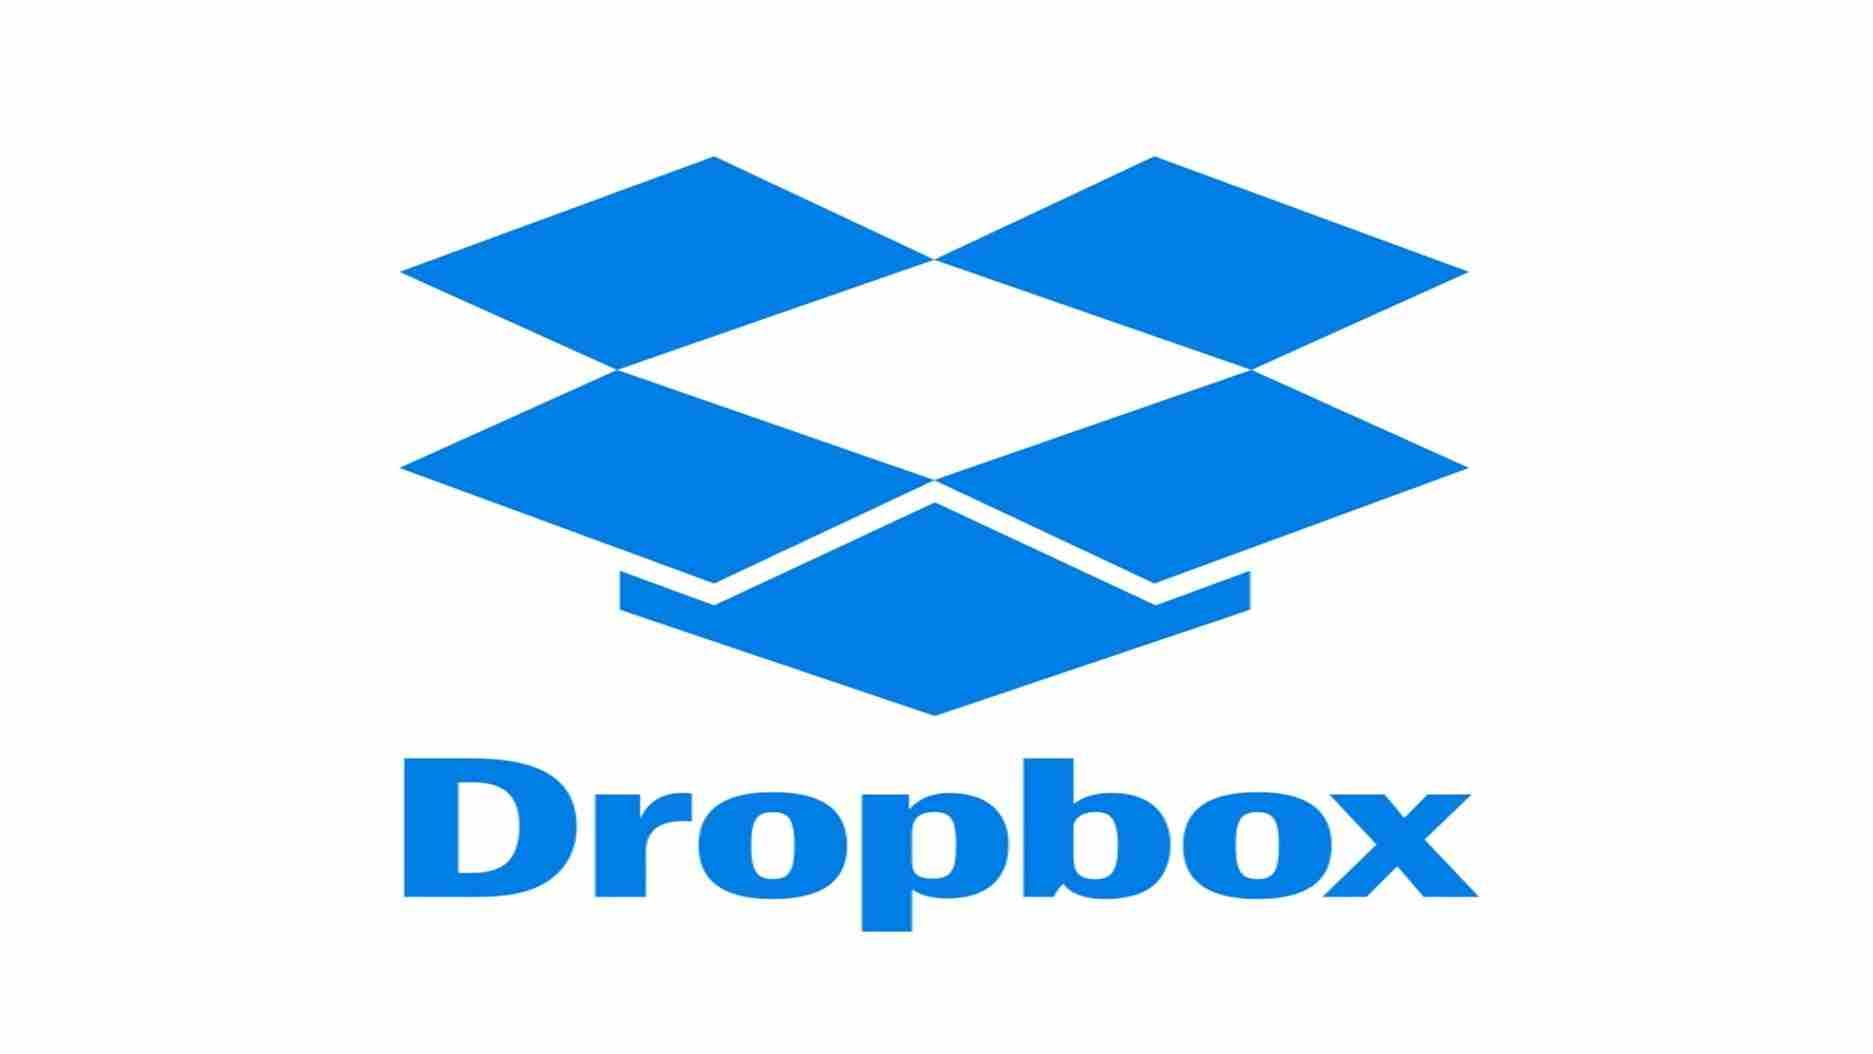 dropbox softwa re cloud stora ge.jpg